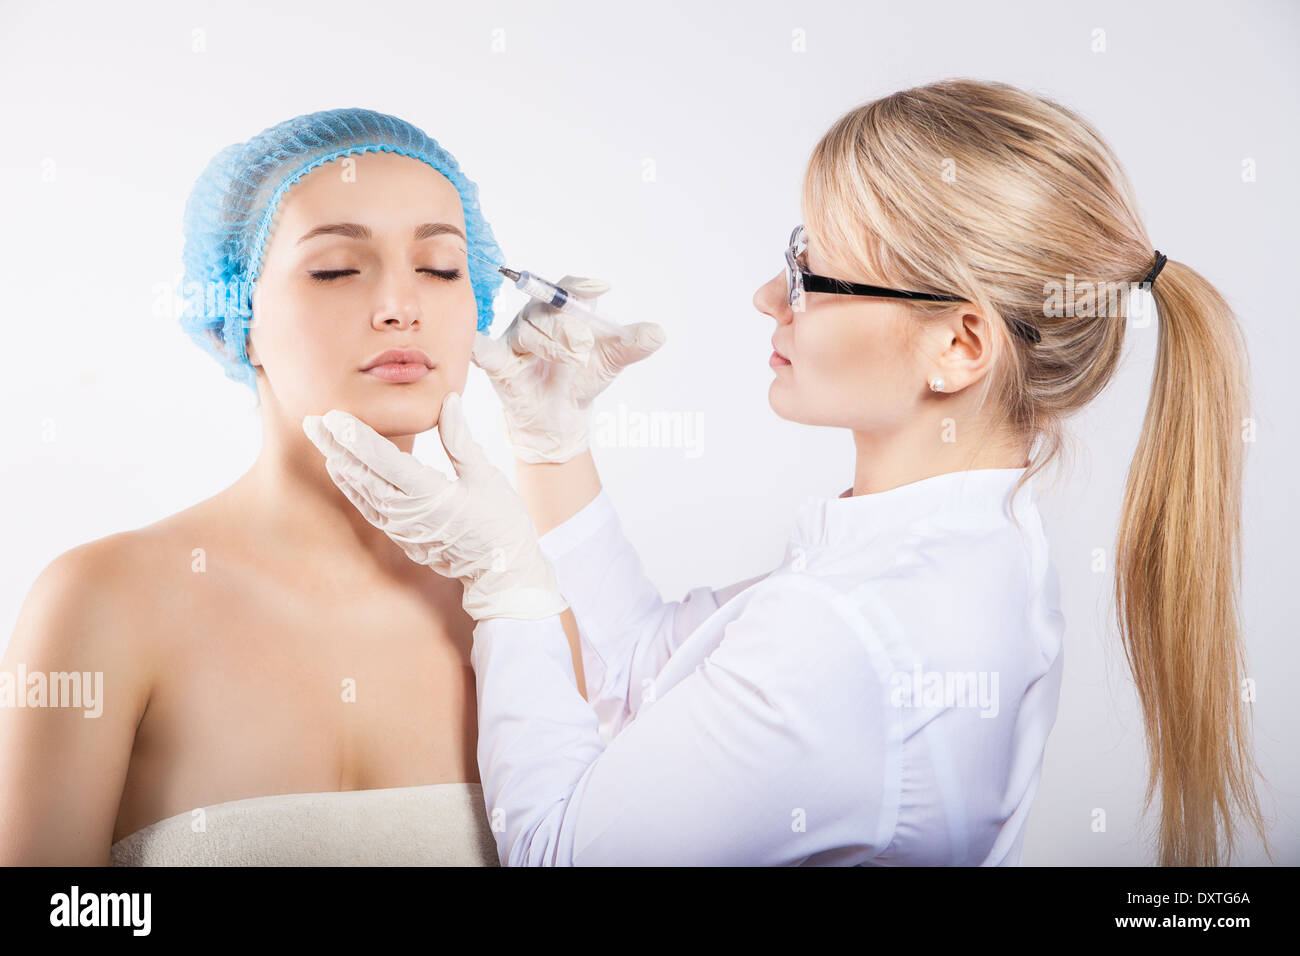 Gesundheitswesen, Medizin und plastische Chirurgie - Kosmetikerin mit Patienten tun, Botox-Injektion im Krankenhaus Stockfoto